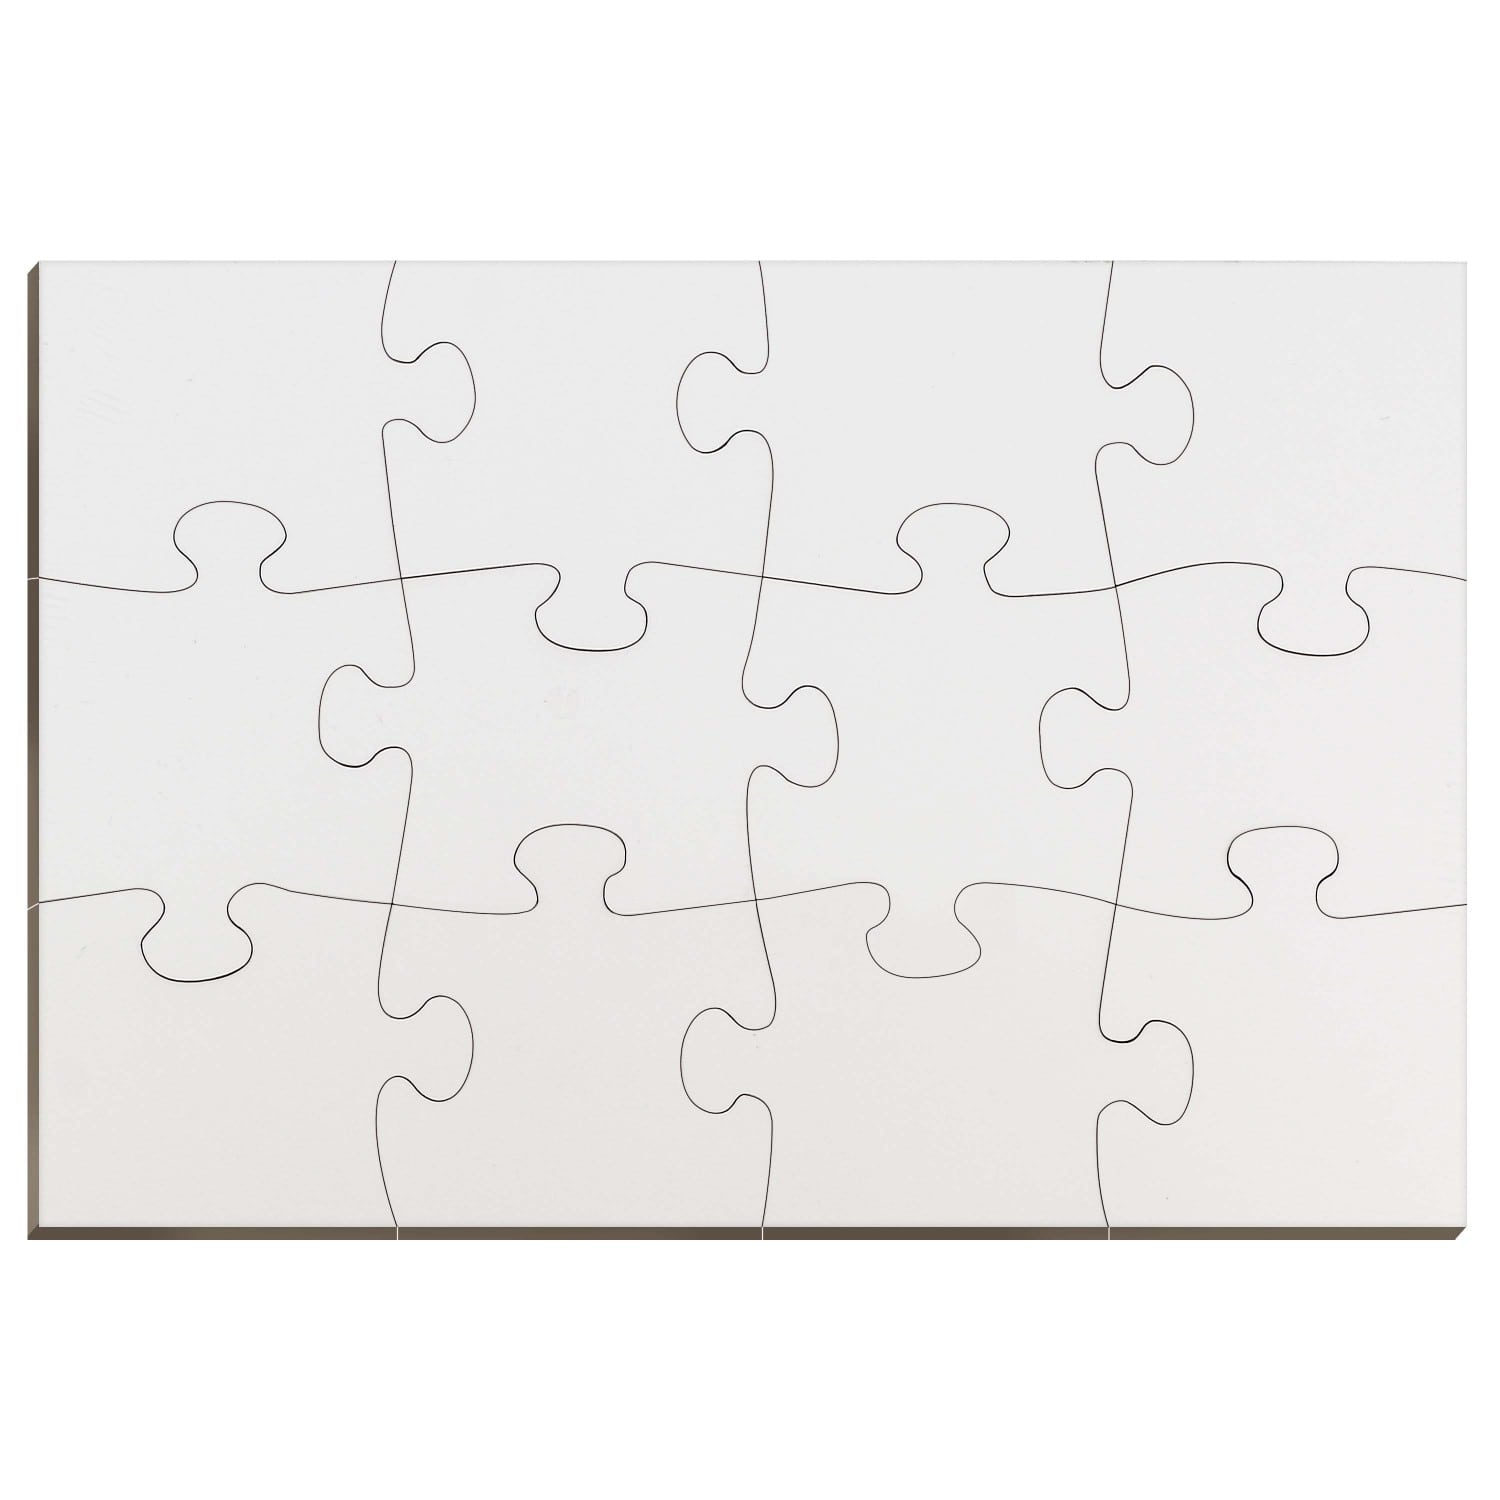 Puzzle TECHNOTAPE rectangulaire - Bois - Finition brillante - Dim. 18x26cm  - 12 pièces - Epaisseur 0,3cm